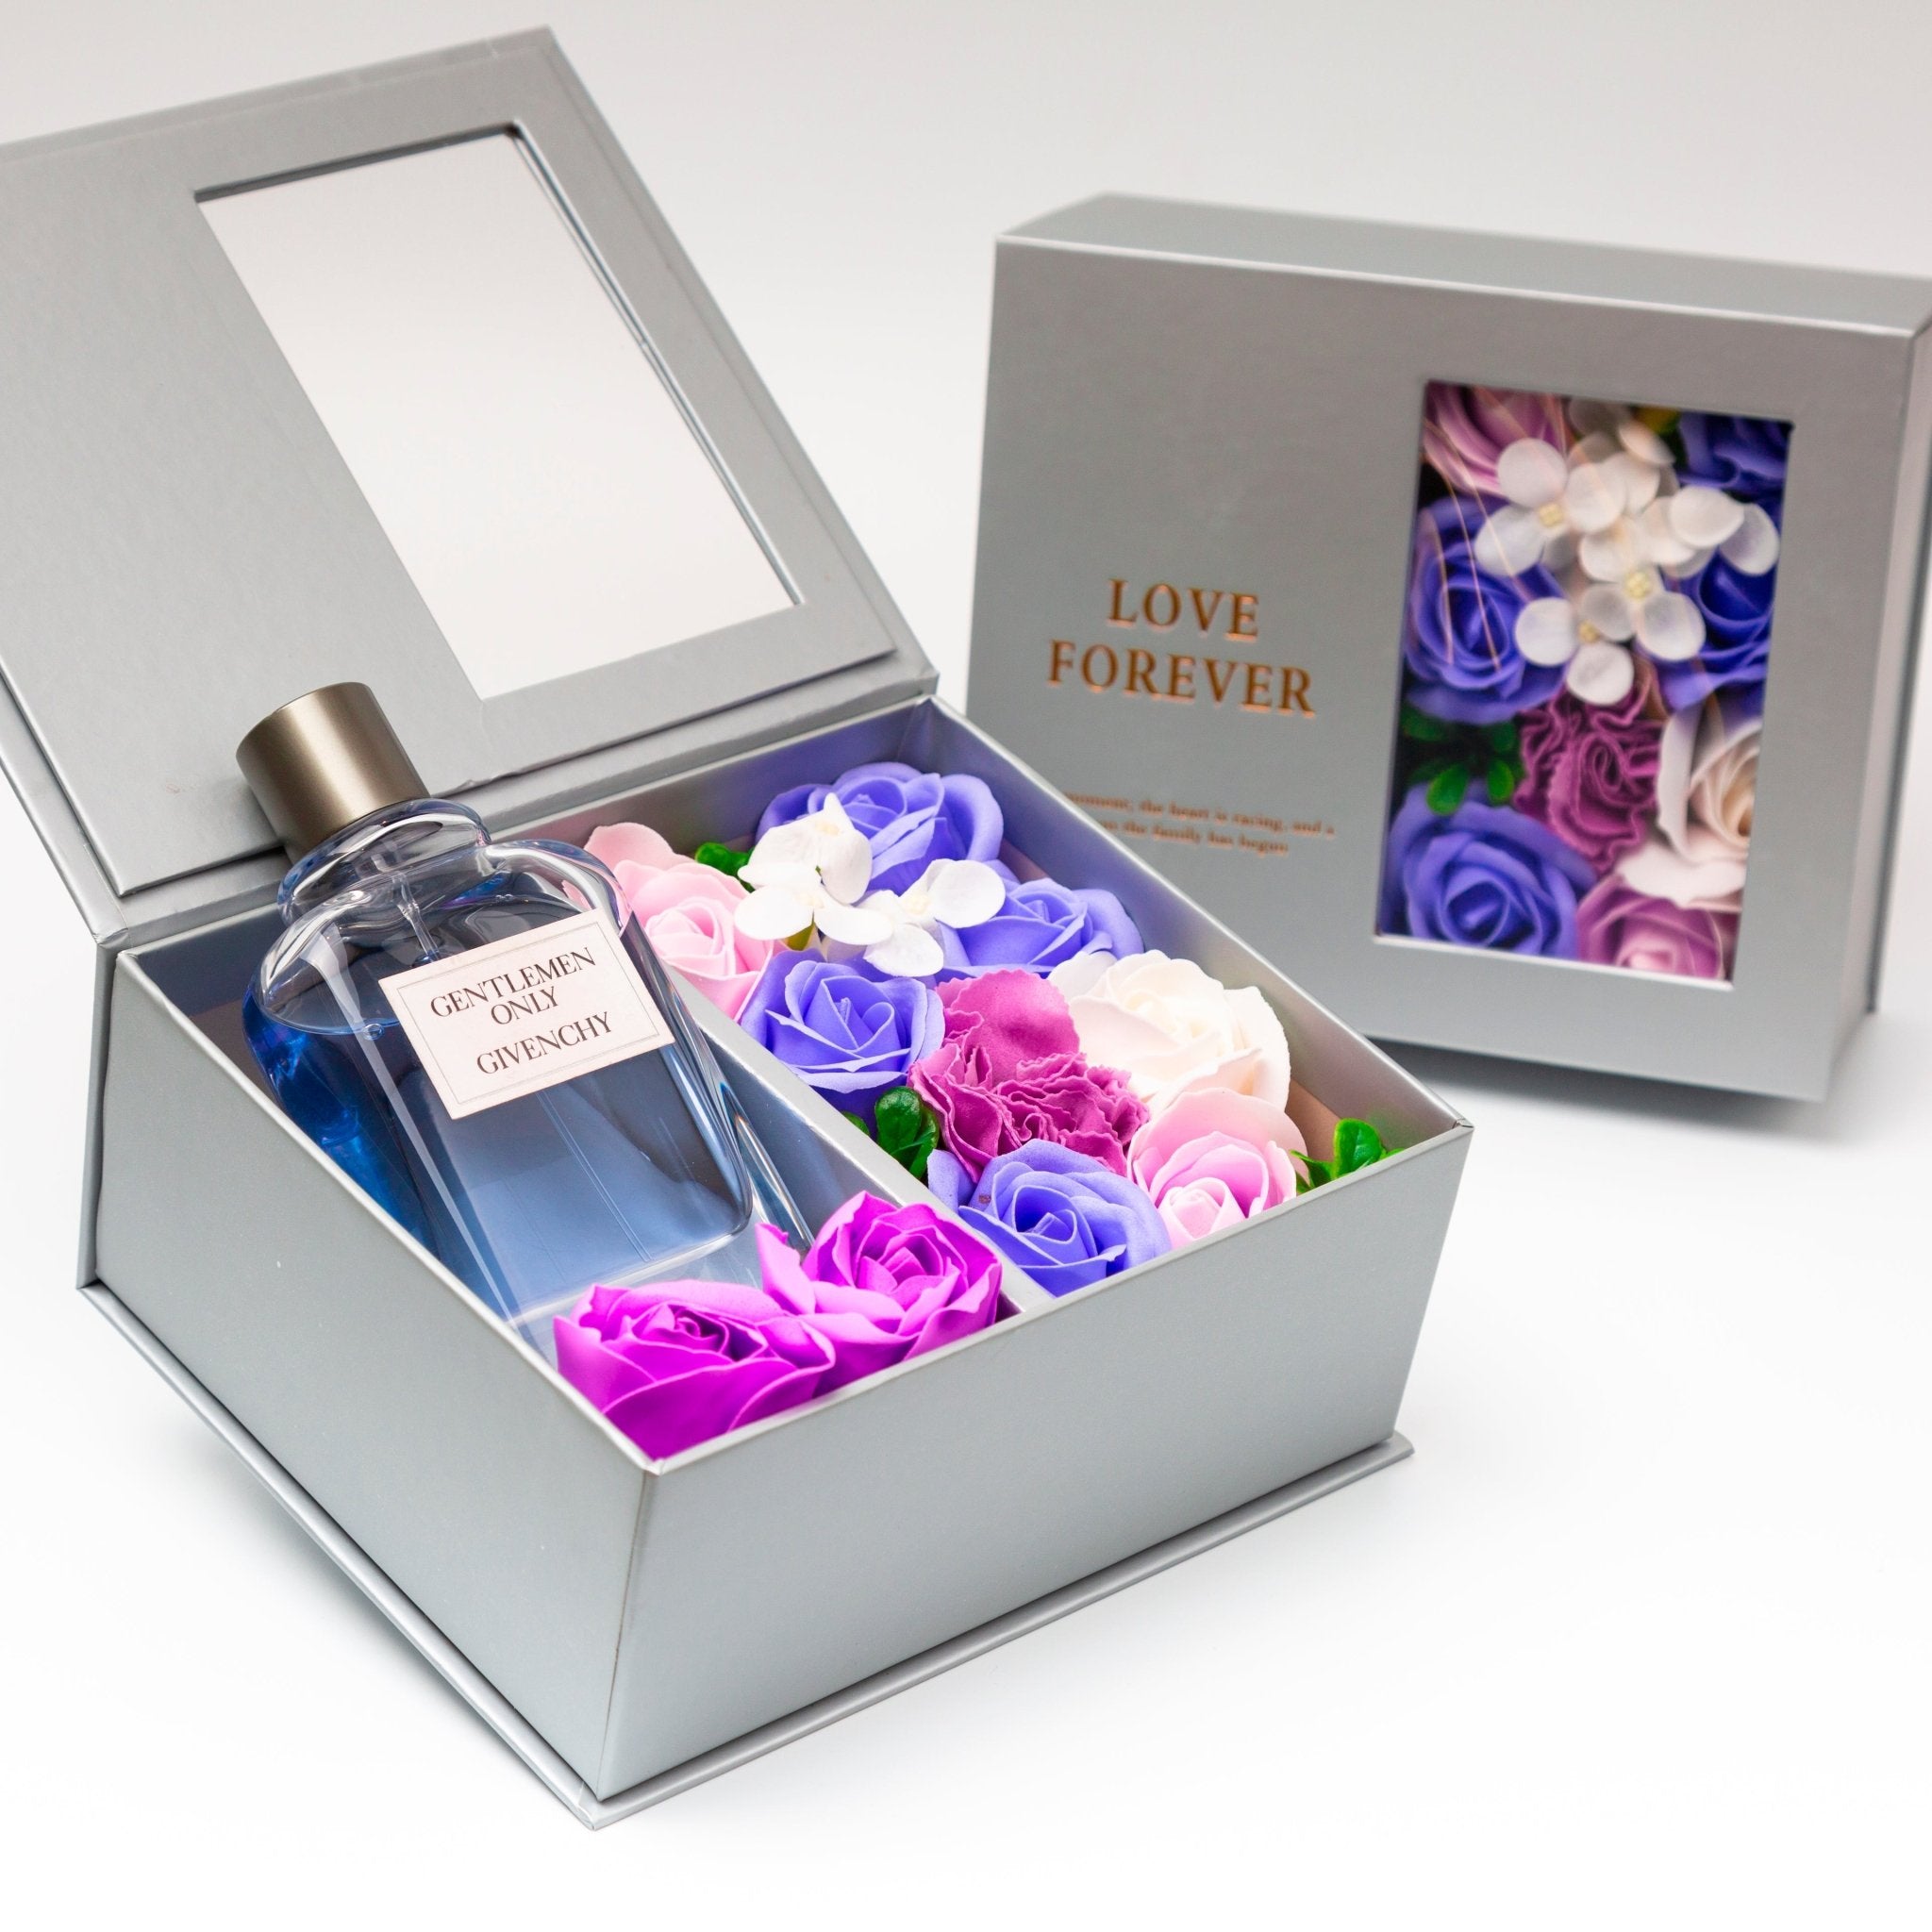 Flower Box - Perfume Gift For Men 4 - #shoFlower Box - Perfume Gift For Men 4p_name#Flower Box - Perfume Gift For Men 4Gift Boxes & TinsTakreemTakreem.joMenPerfumeFlower Box - Perfume Gift For Men 4 - Takreem.jo